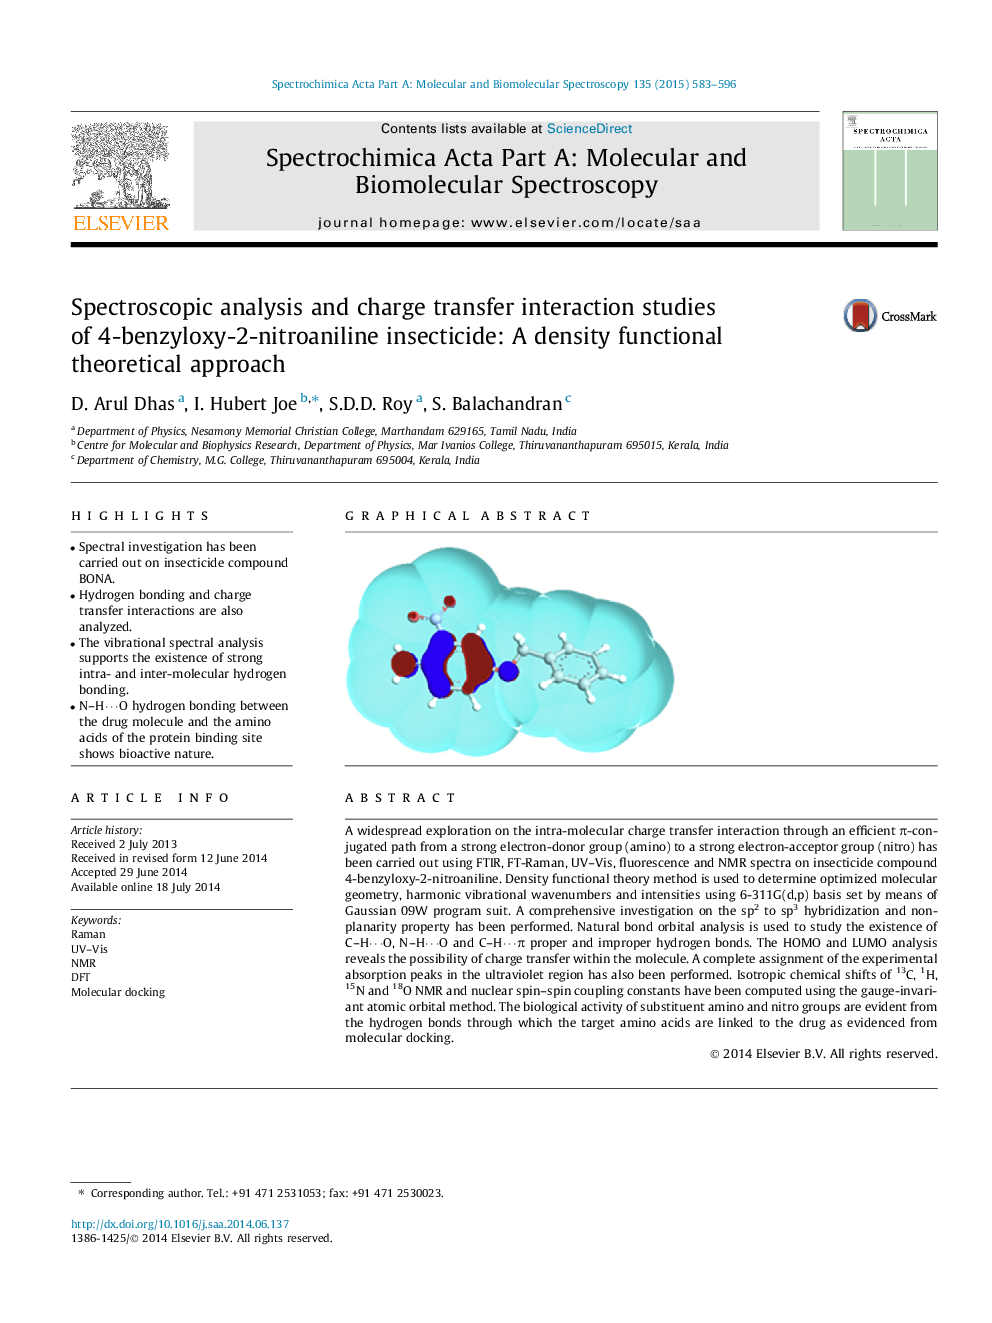 تجزیه و تحلیل اسپکتروسکوپیک و تعامل با انتقال شارژ حشره کش 4-بنزیلوکسی-2-نیترا انیلین: رویکرد نظری کاربردی چگالی 